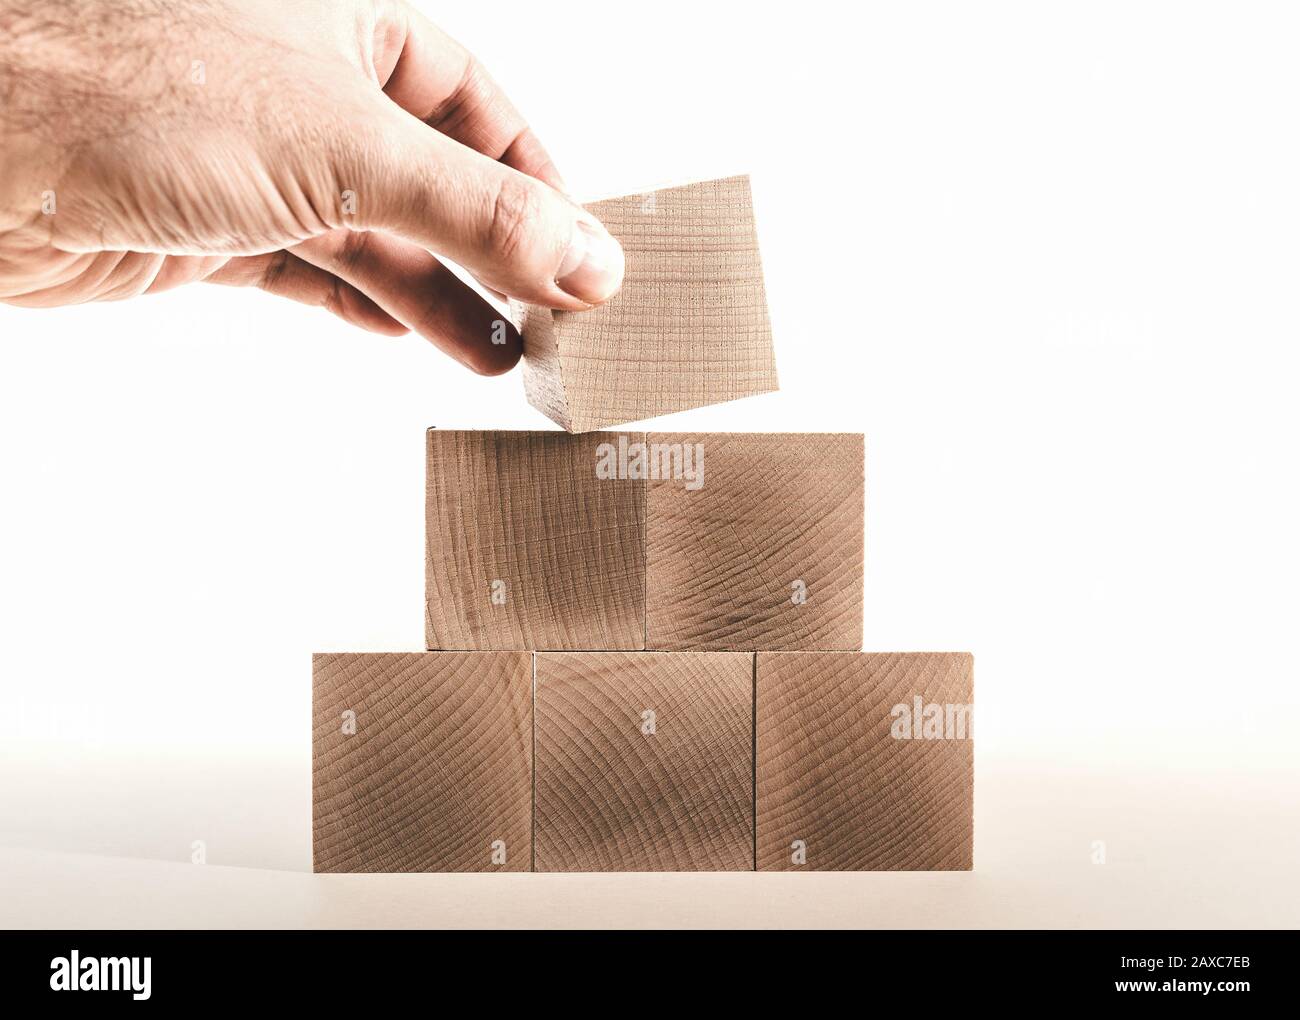 mano mettendo ultimo blocco di legno sulla cima della piramide, concetto di sviluppo di affari Foto Stock